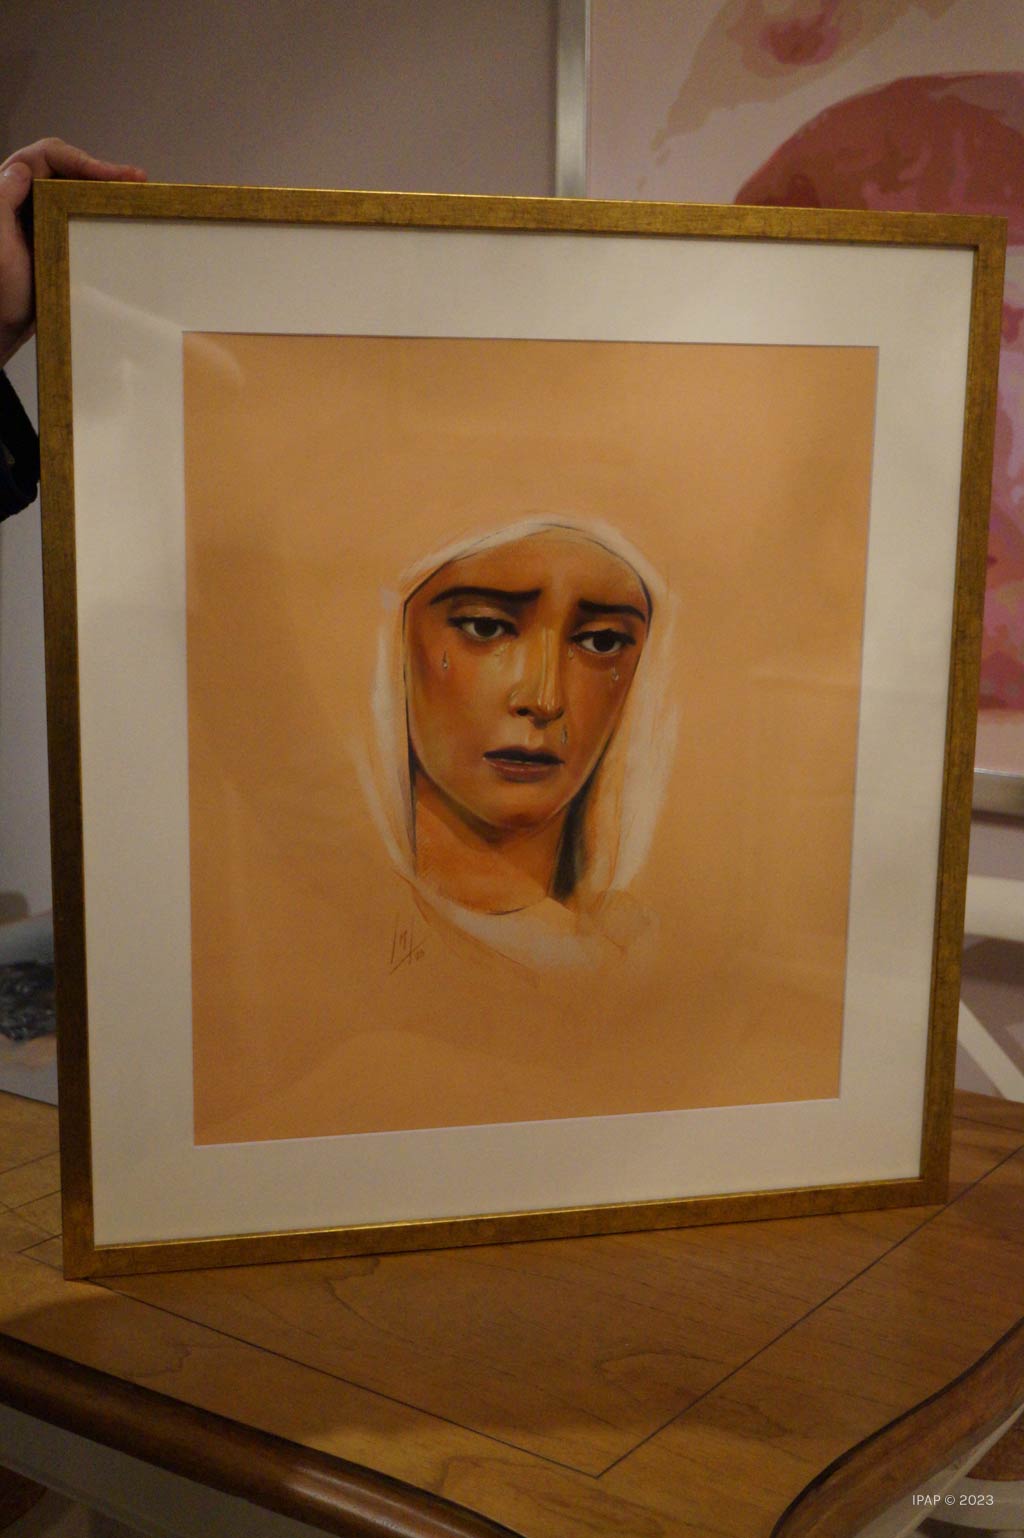 Retrato a Pastel de Nuestra Señora de la Estrella realizado por la artista Inmaculada Peña Ruiz en 2023